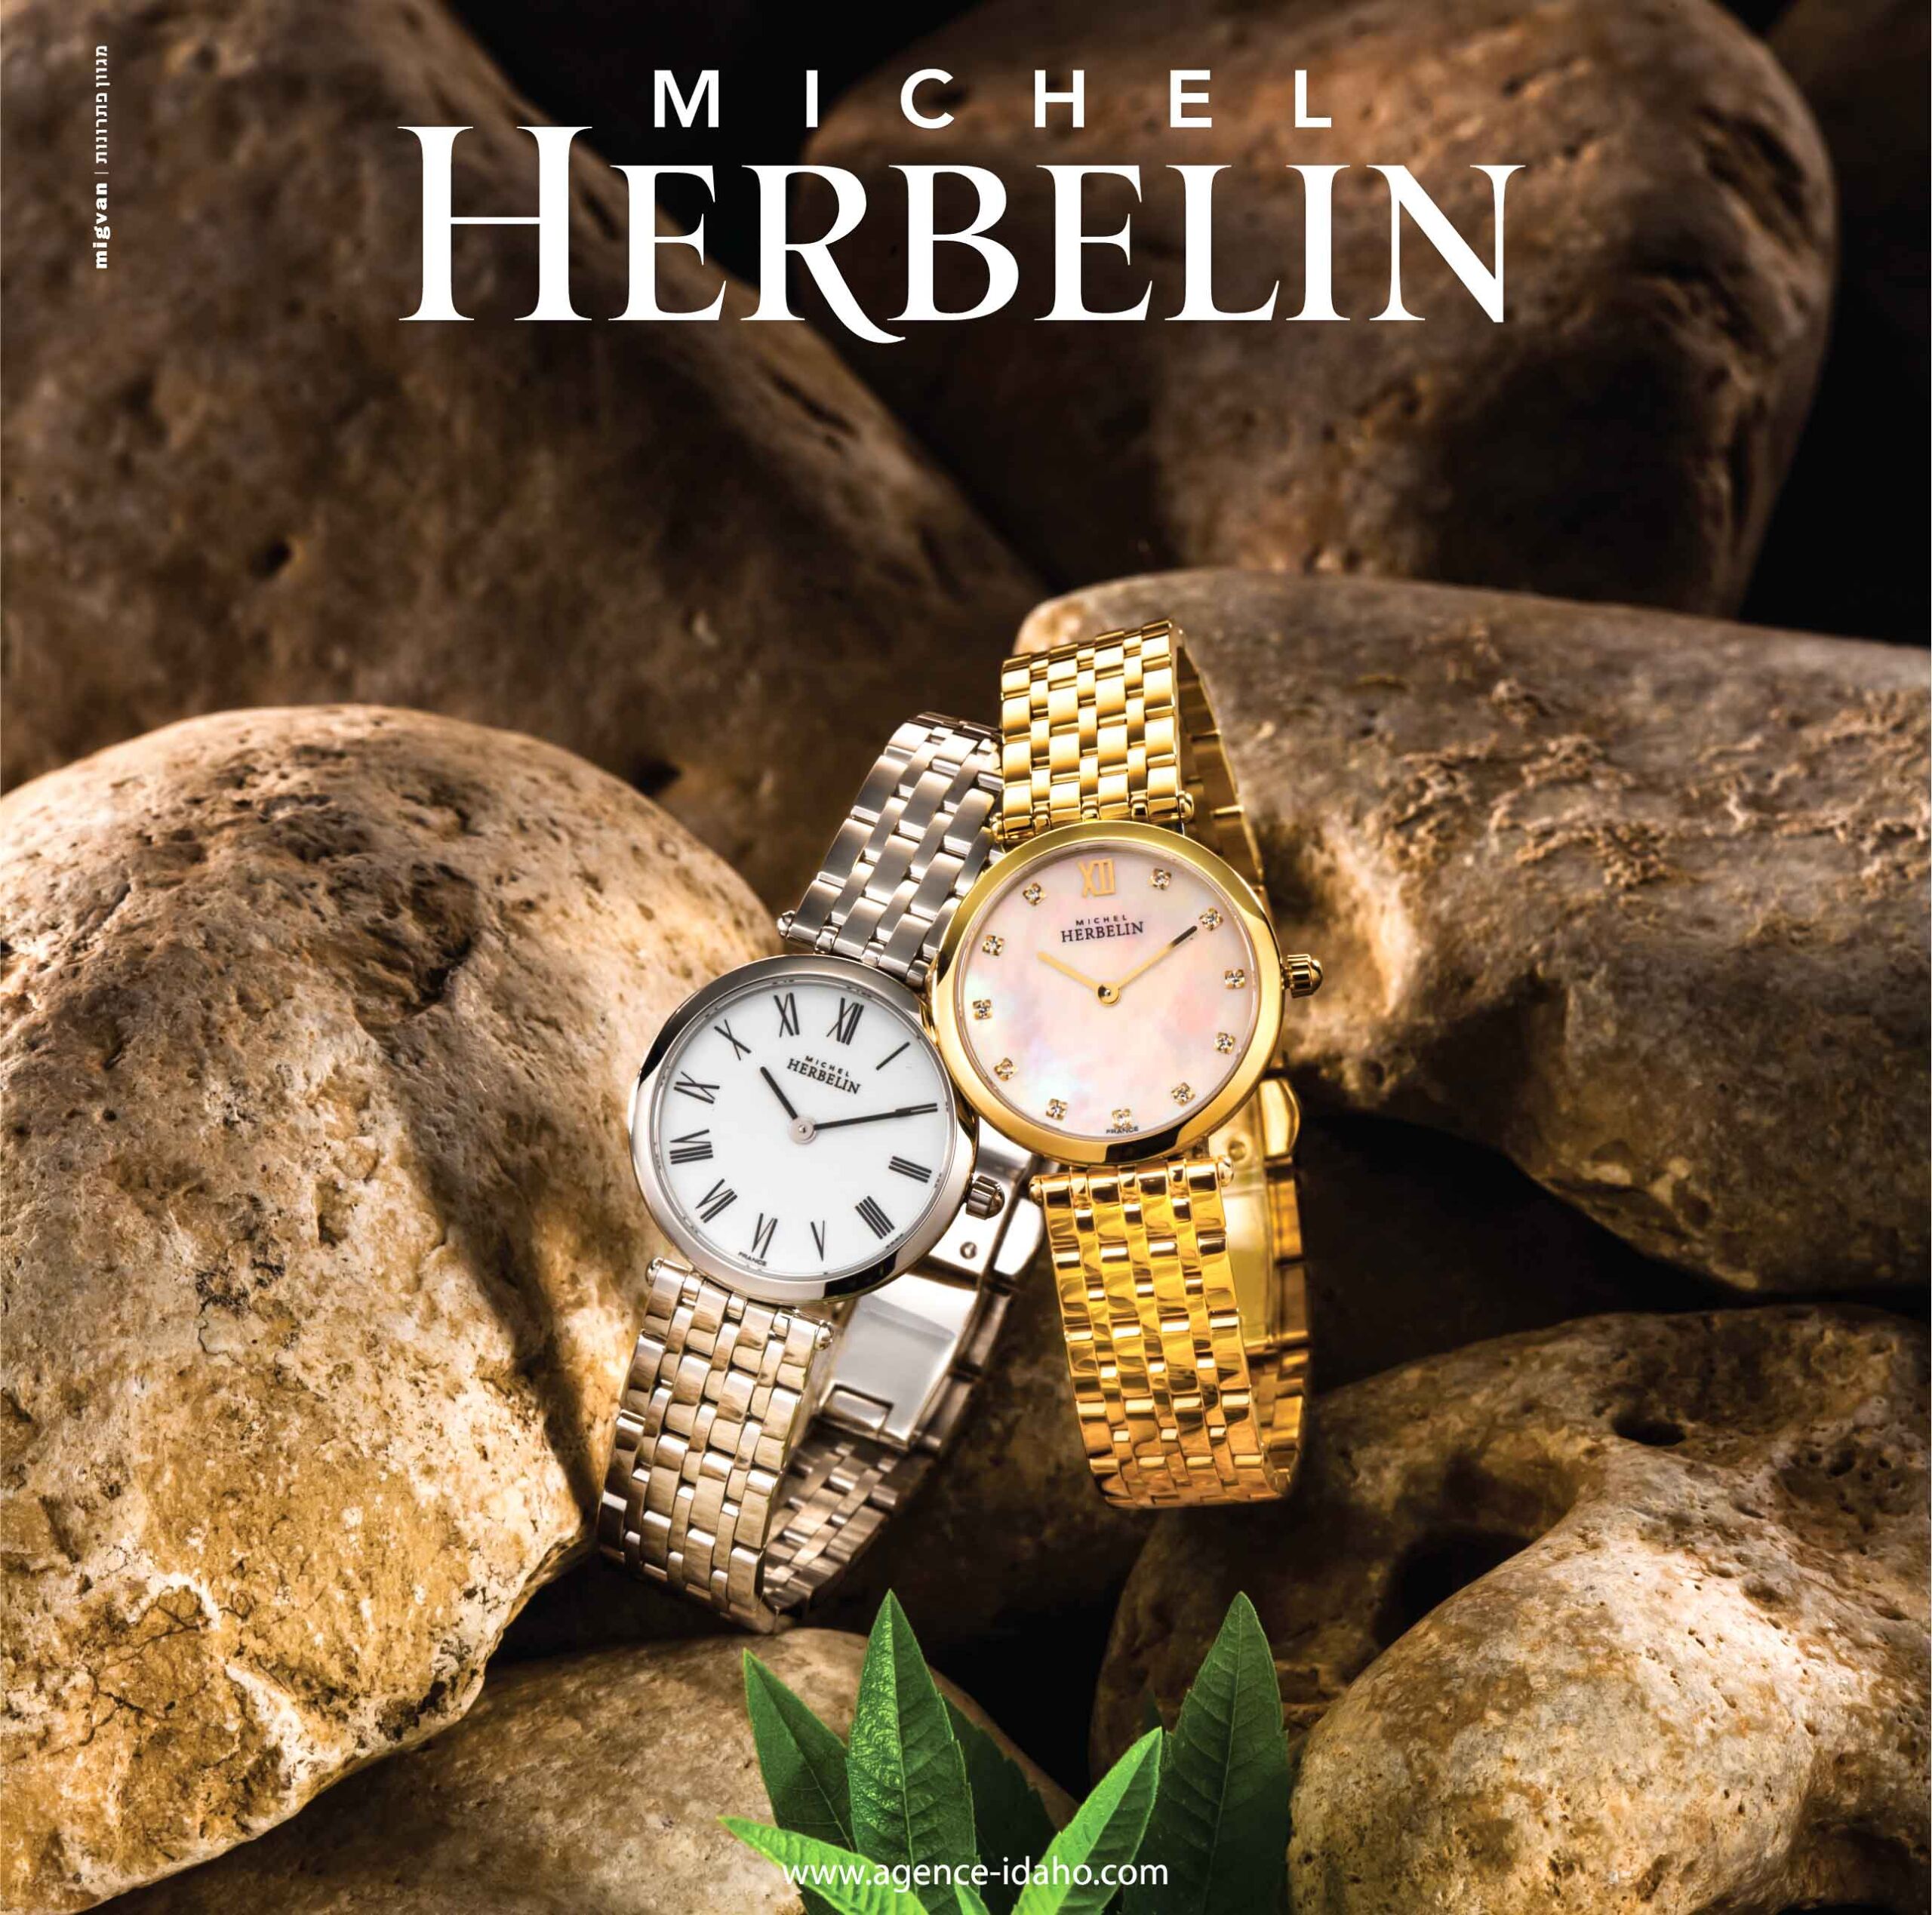 שני שעוני מתכת זהב וכסוף של חברת מישל הרבליין MICHEL HERMELIN על חלוקי נחל עם עלים ירובים מודעה של משרד פרסום מגוון פתרונות MIGVAN AGENCE-IDAHO.COM